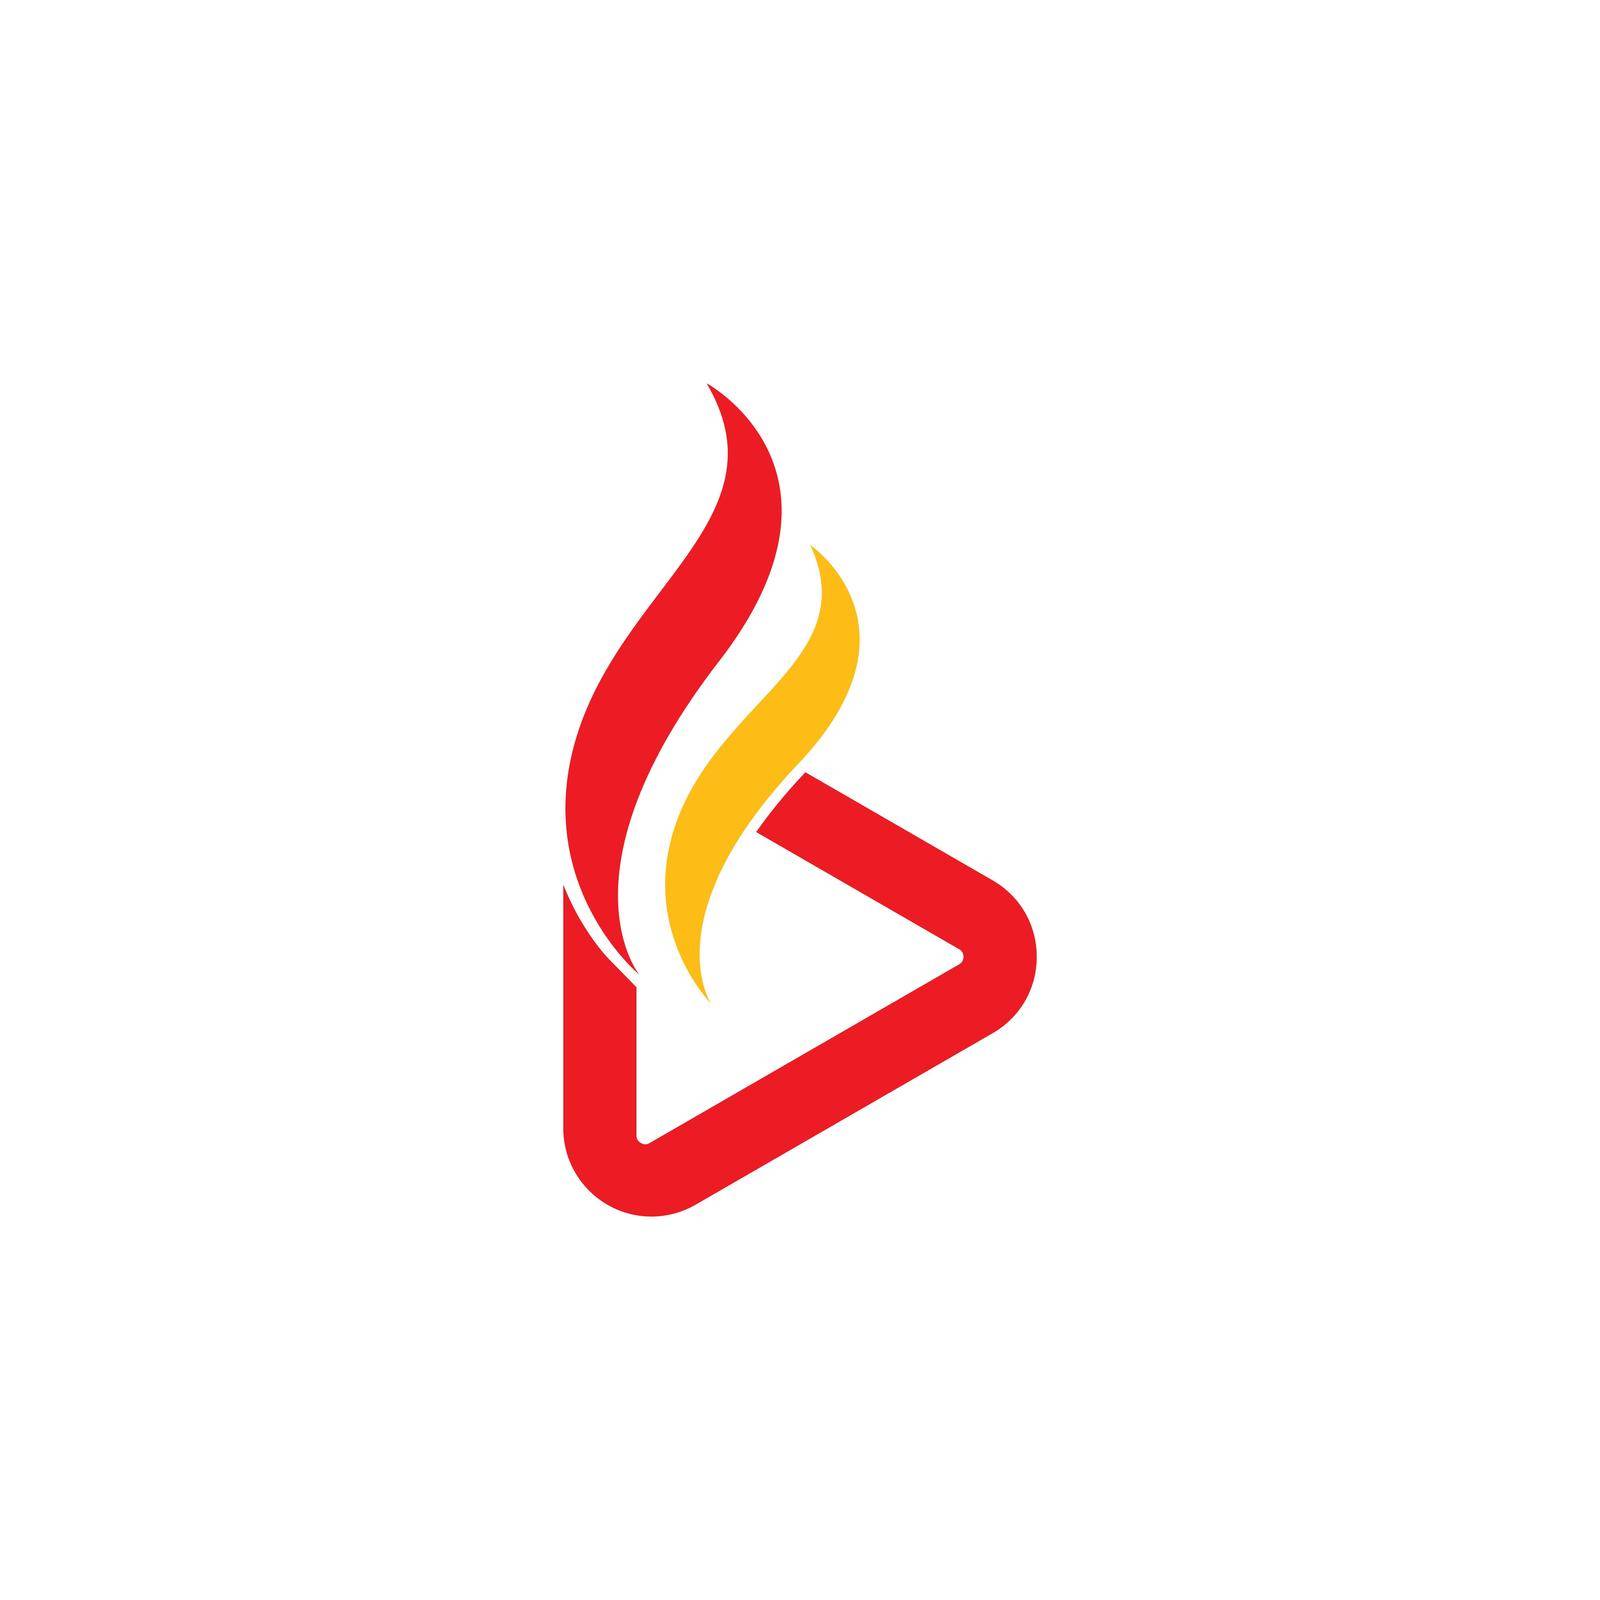 Hot Play logo Vector icon template